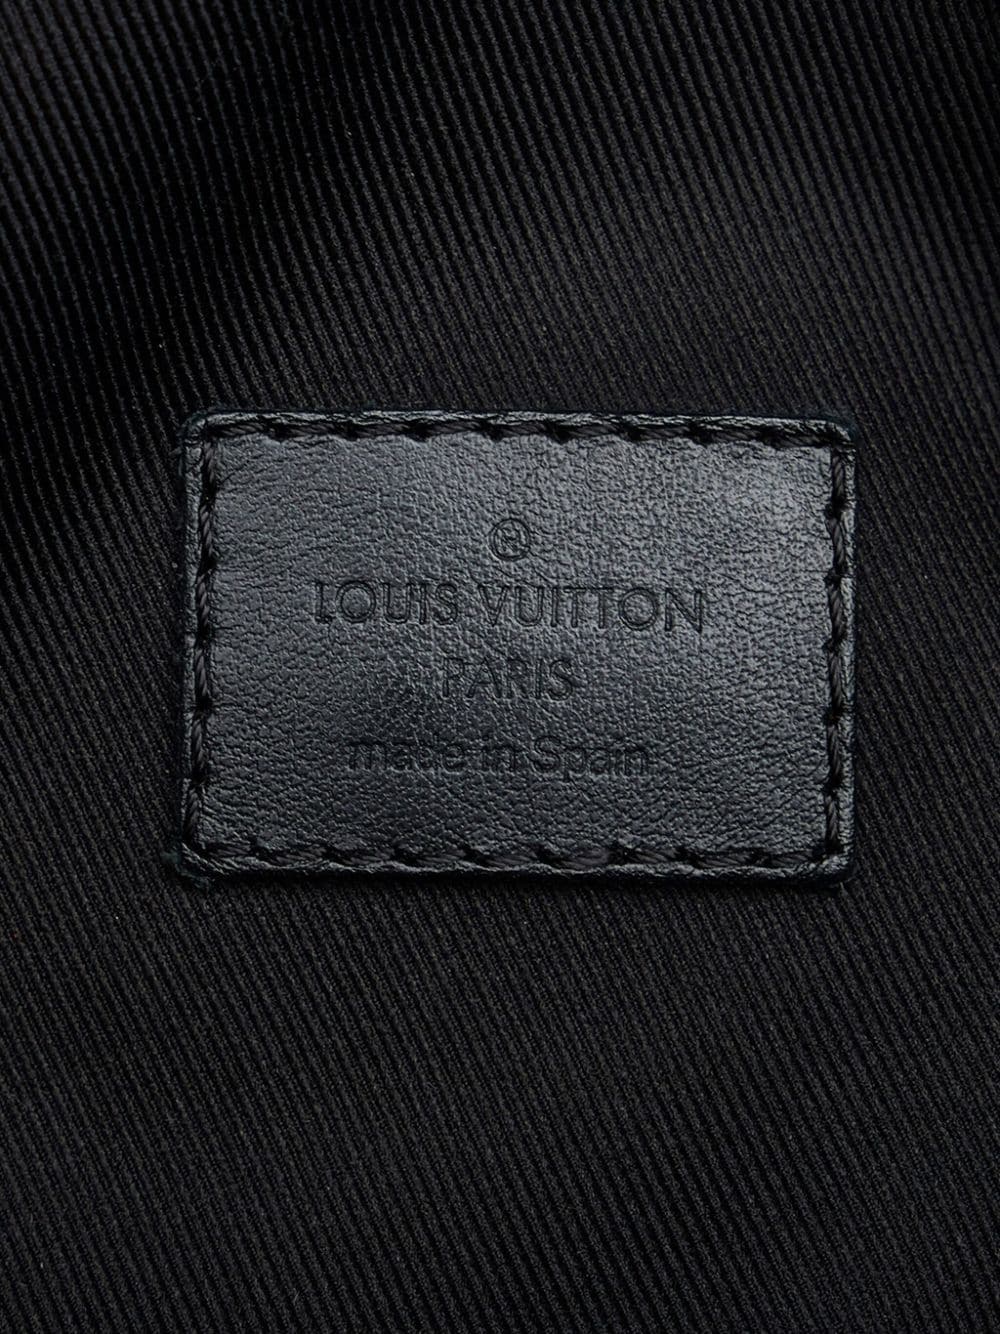 Louis Vuitton 2006 pre-owned Damier Ebène Melville Belt Bag - Farfetch